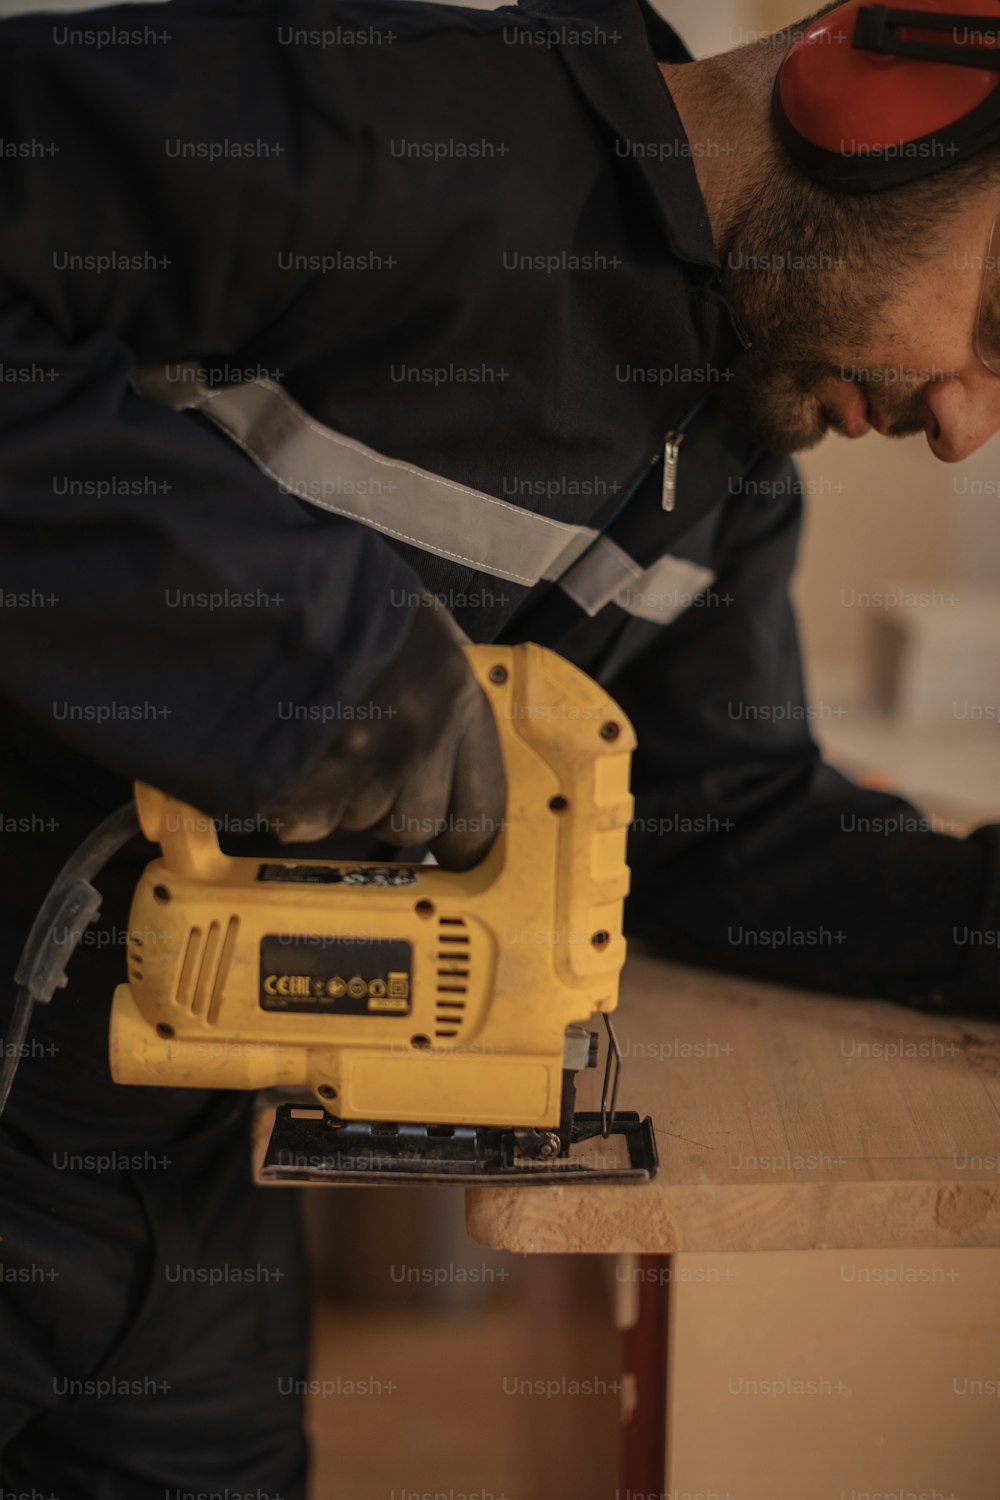 Un hombre trabajando en un pedazo de madera